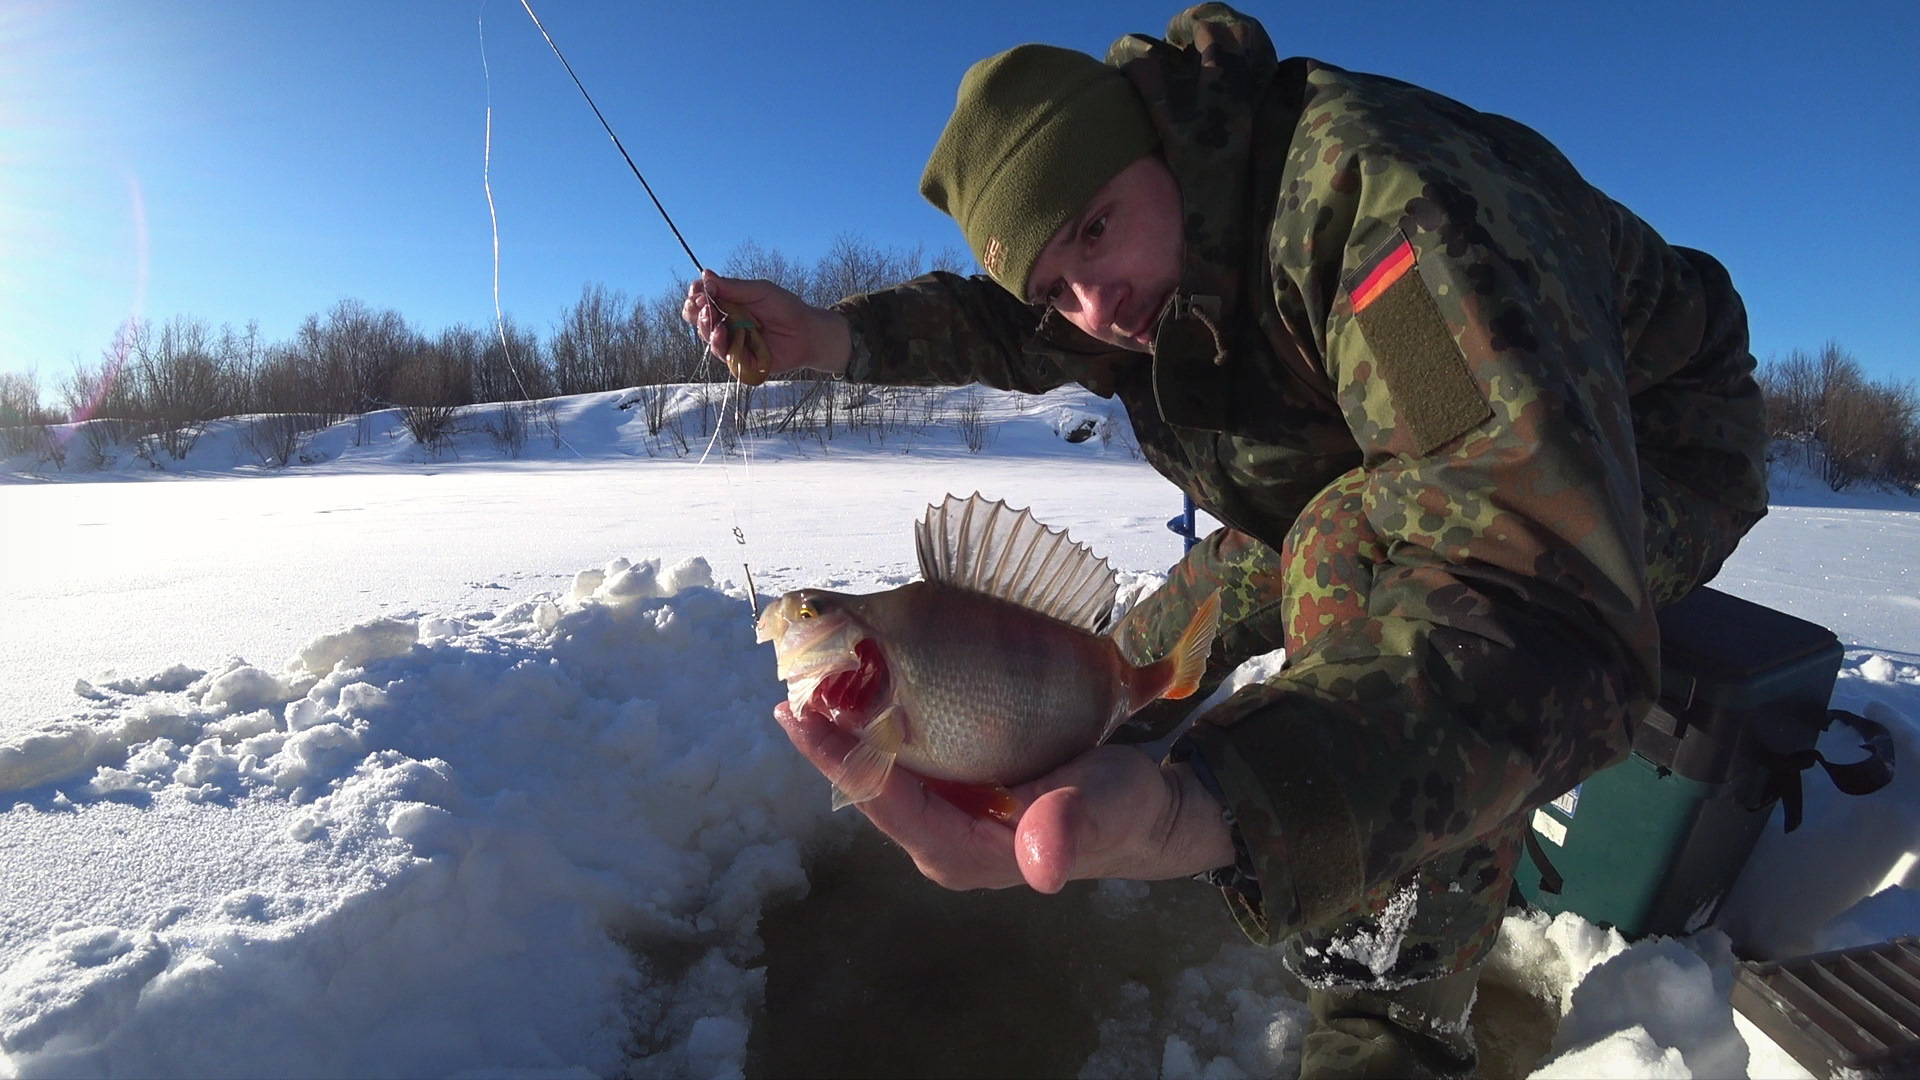 Охота и рыбалка на севере видео